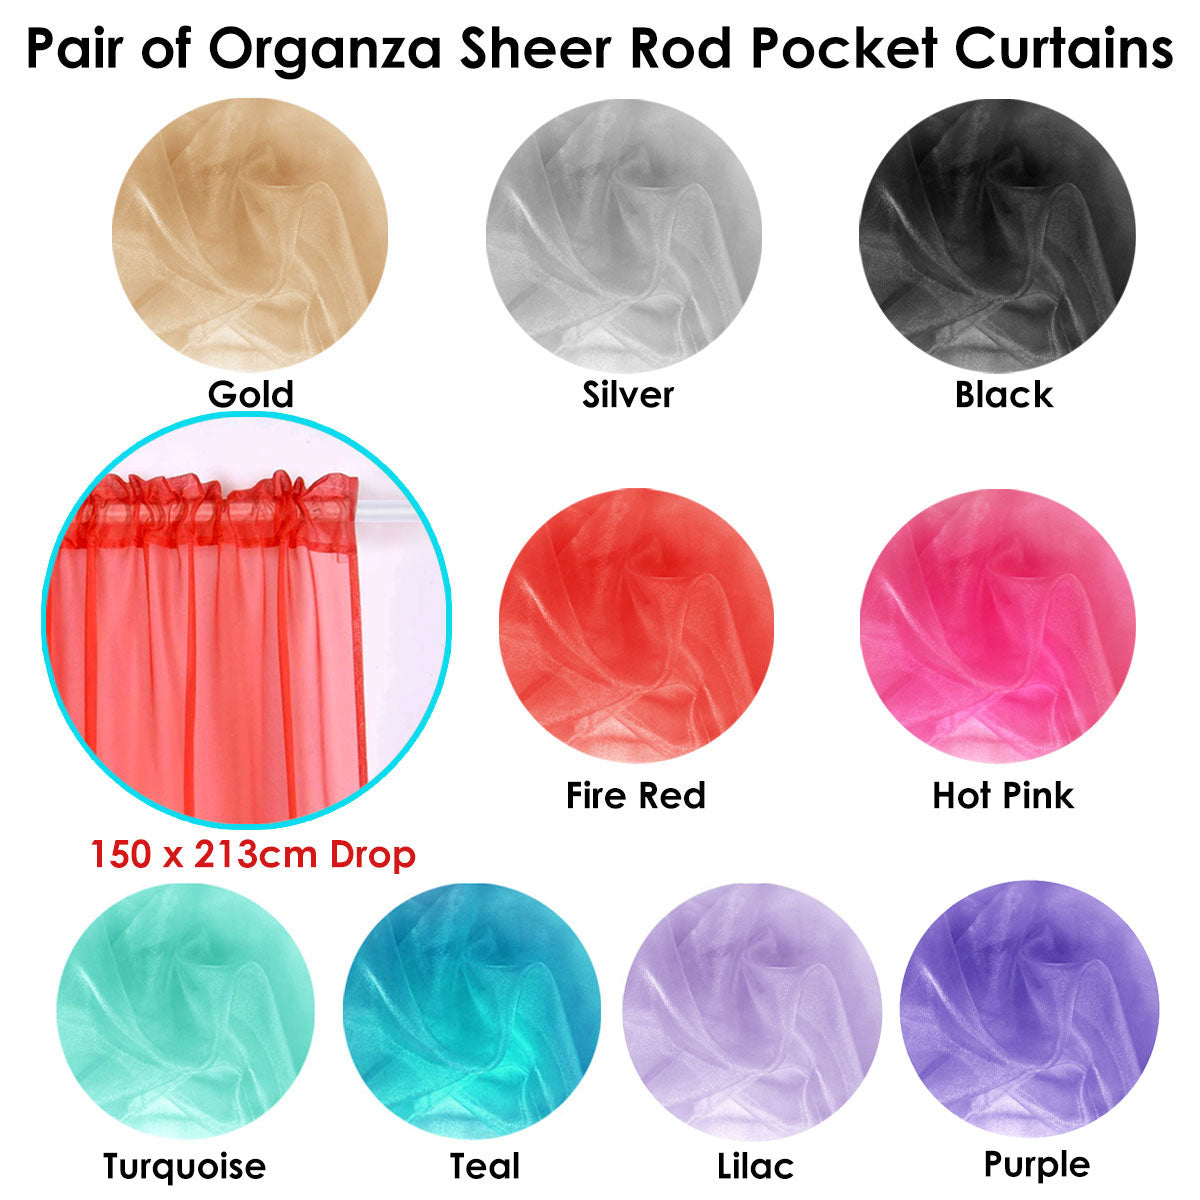 Pair of Organza Sheer Rod Pocket Curtains Lilac